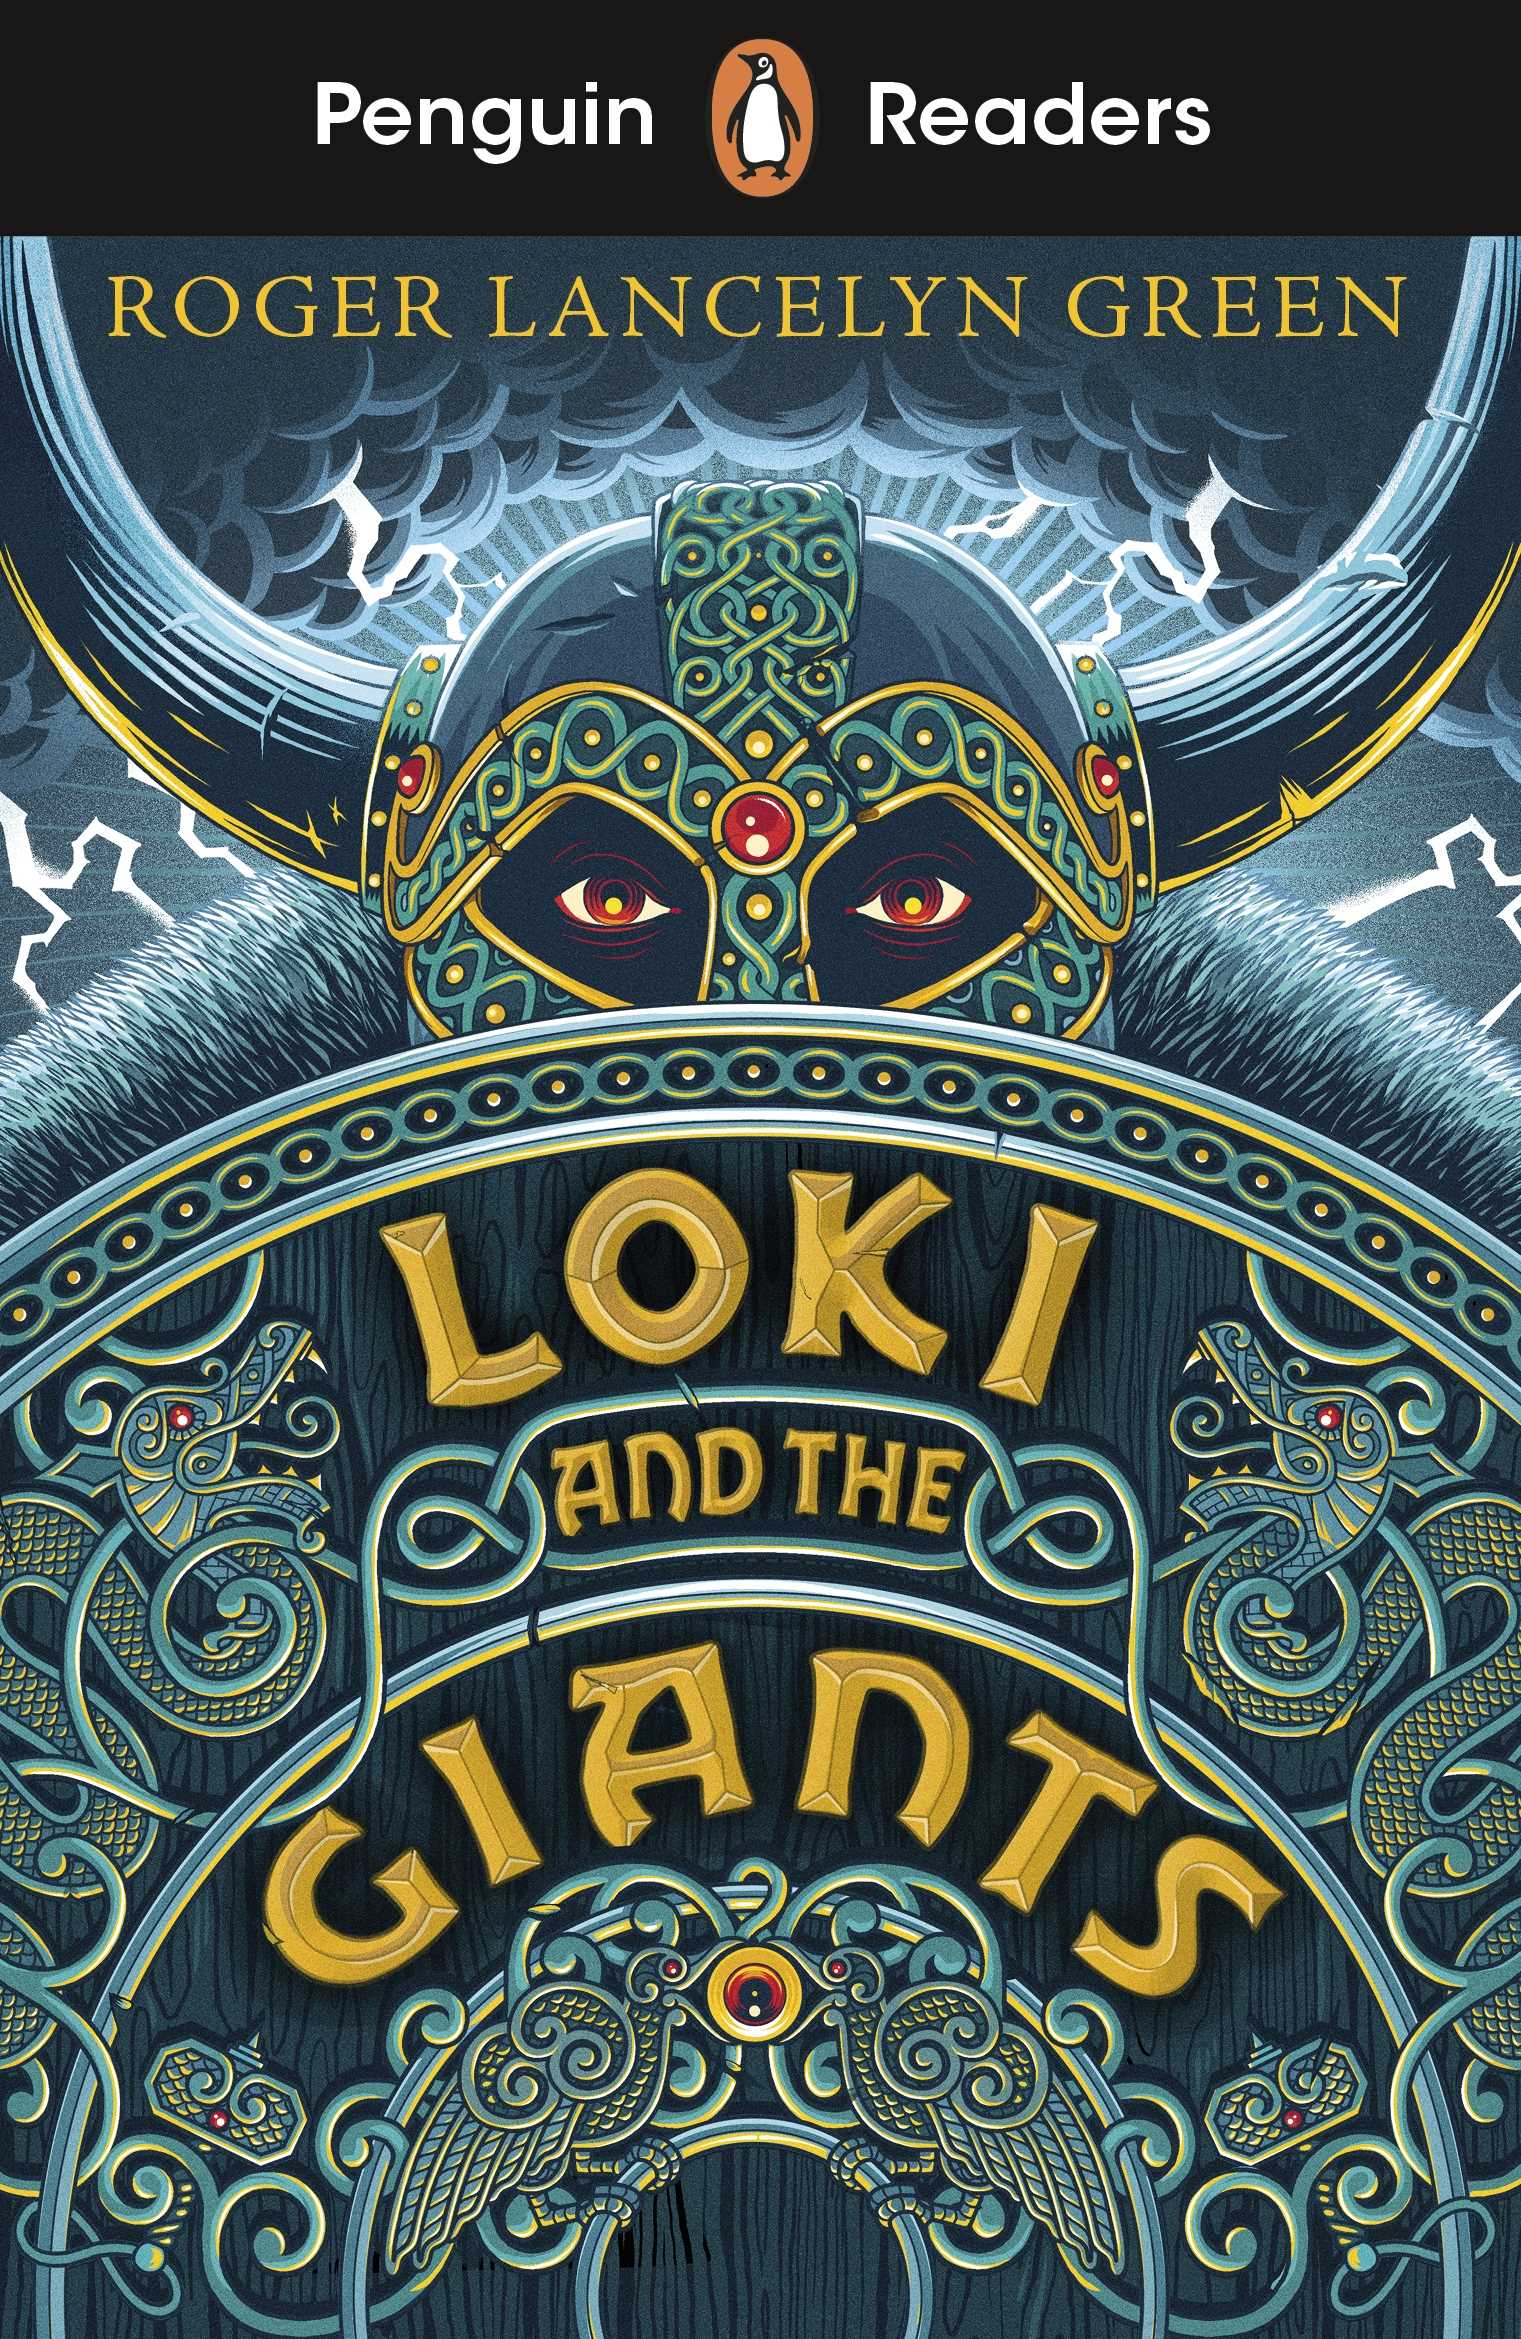 Penguin Readers Starter Level: Loki and the Giants